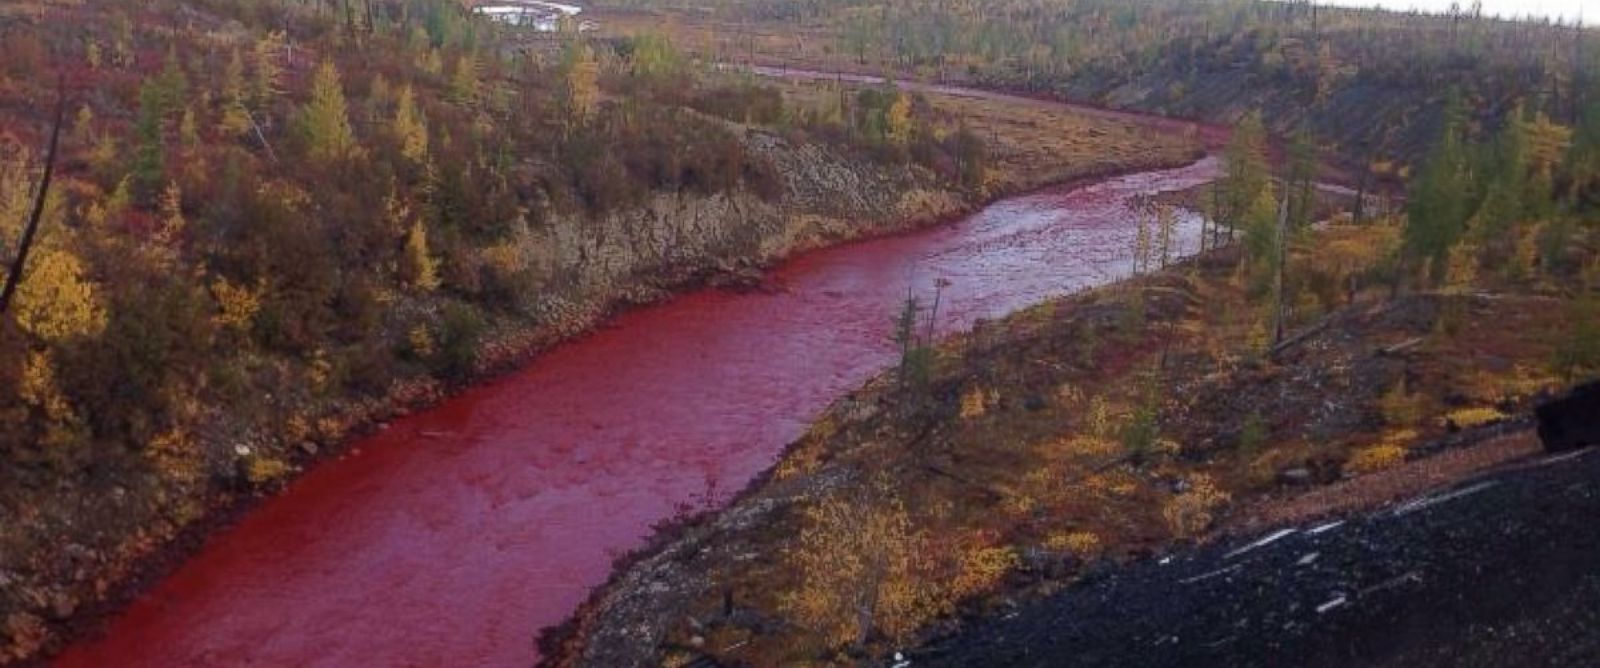 Russie: une rivière se colore de rouge vif